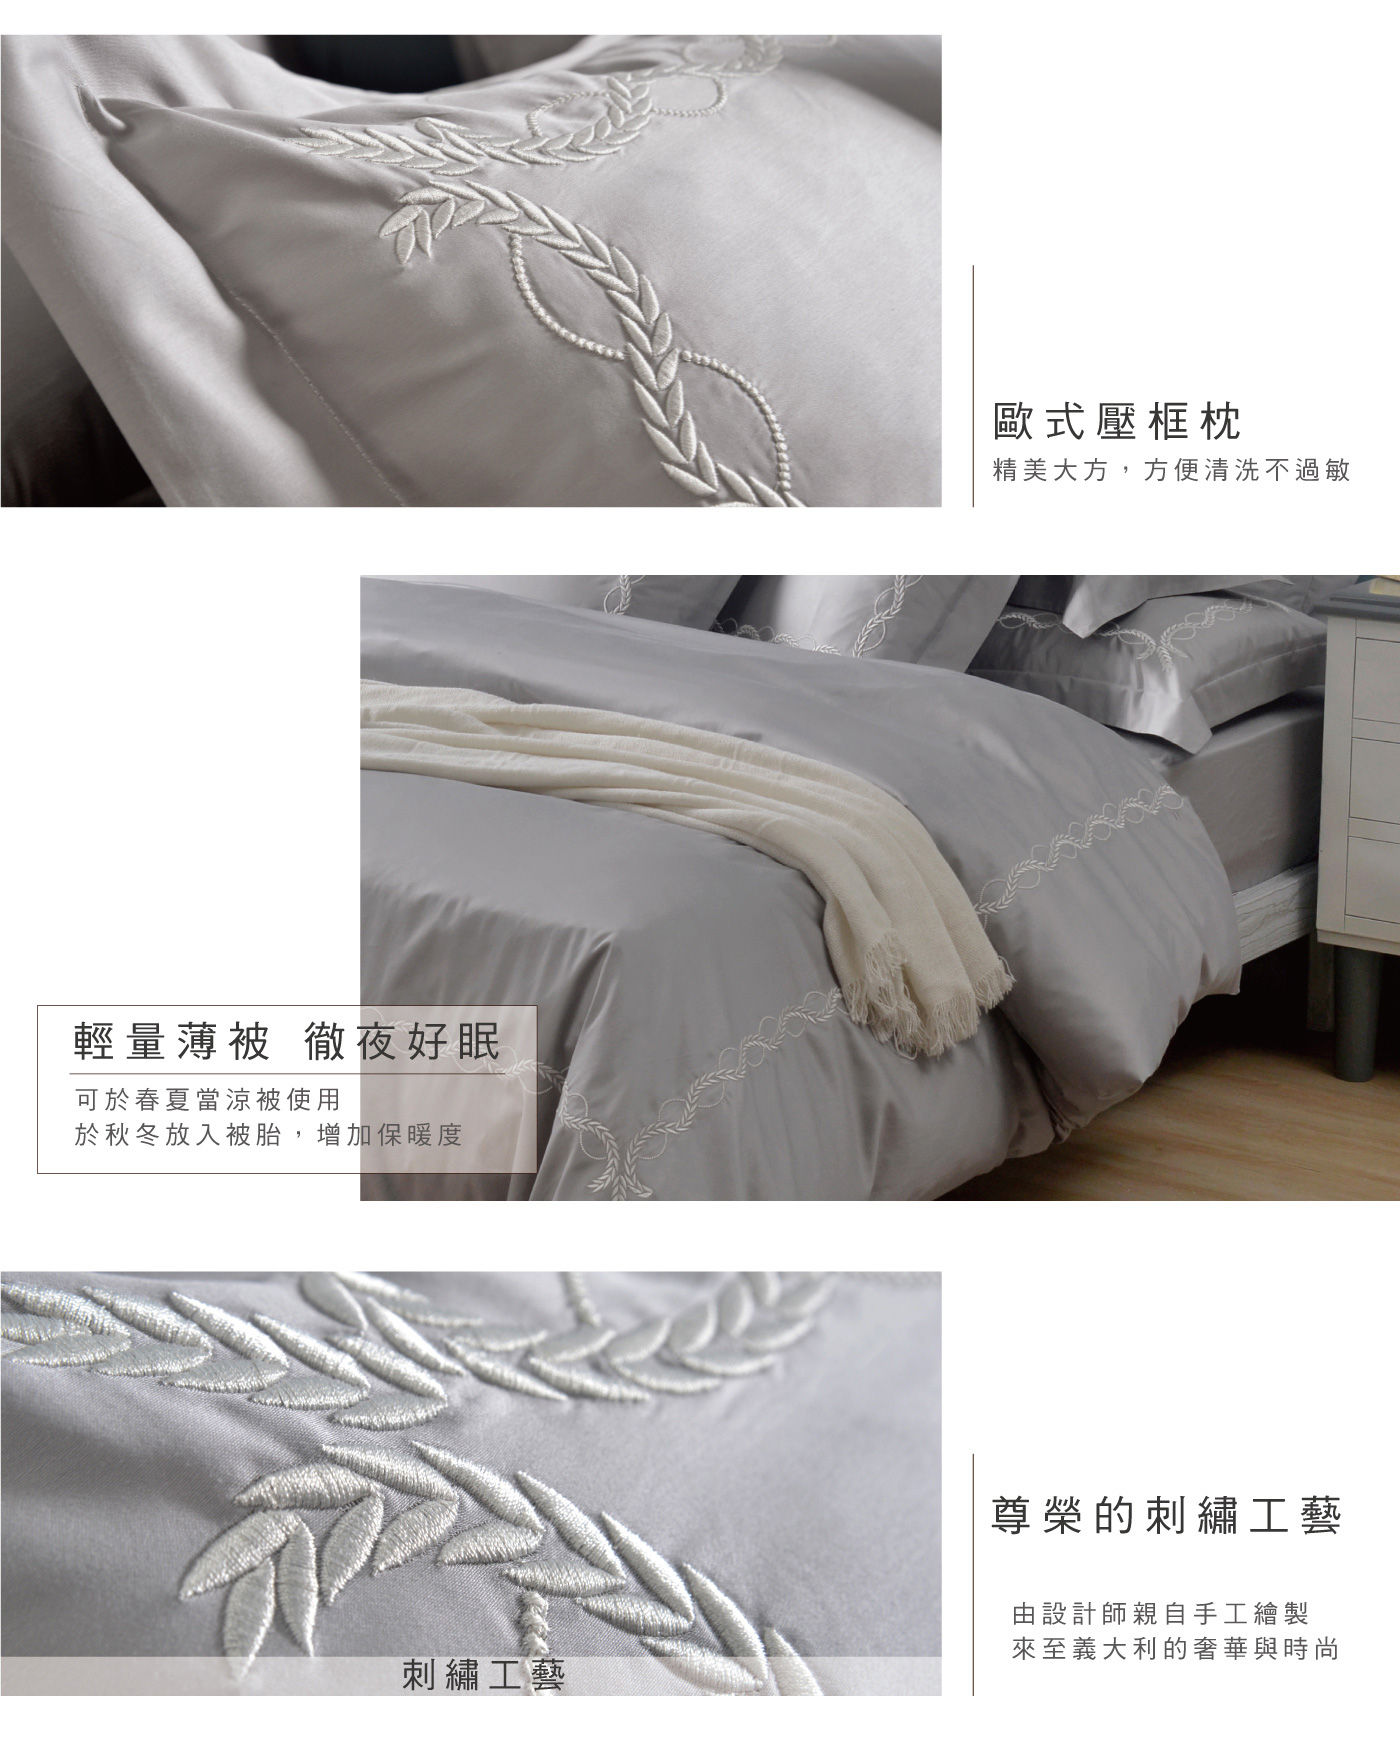 La Belle 雙人300織純棉刺繡被套床包4件組 藤蔓款 白銀灰 歐式壓框枕